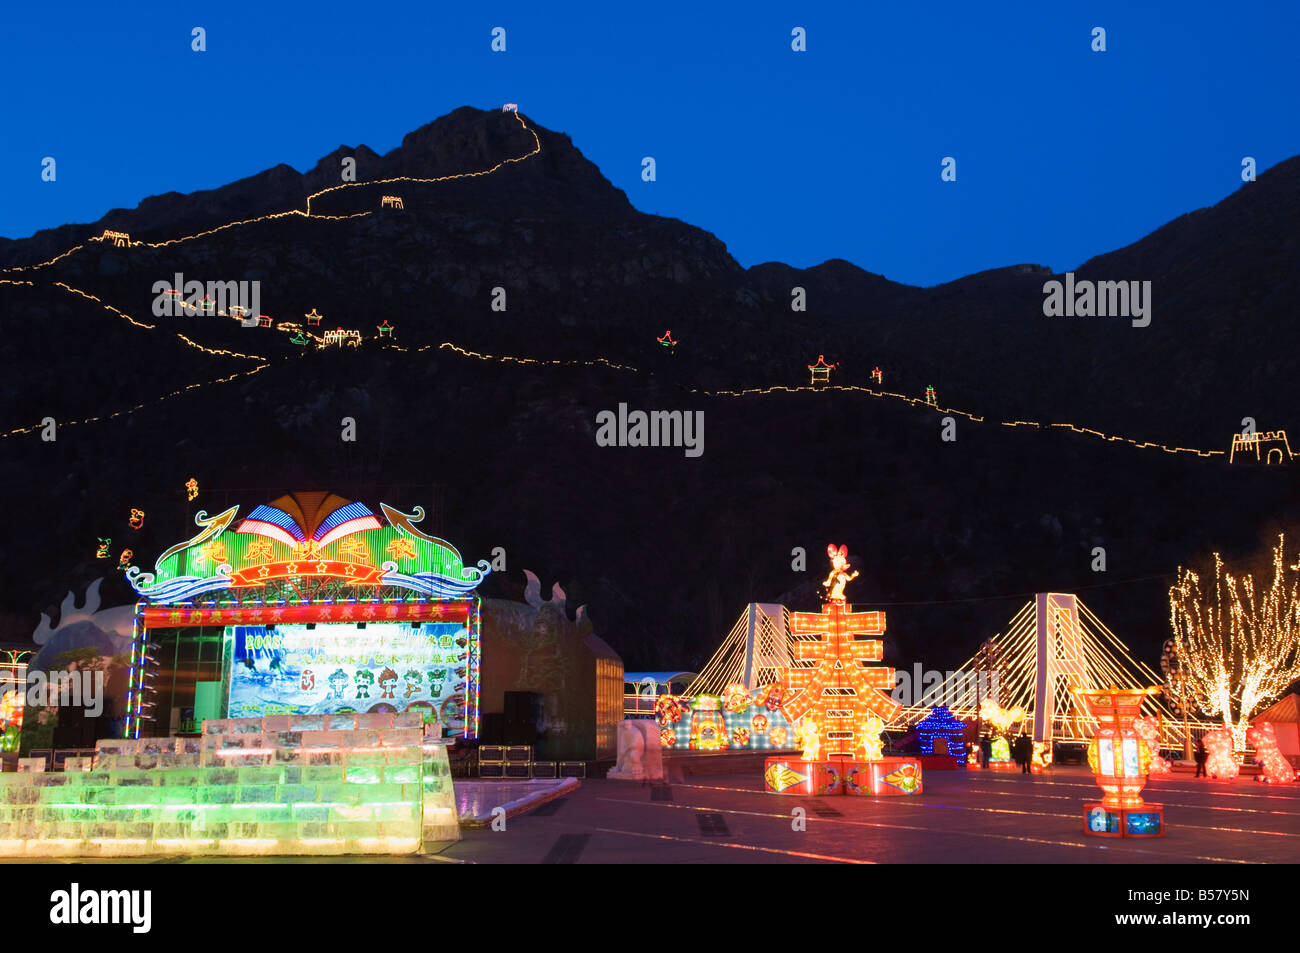 Visualizzazione del tempo di notte luminarie e copia della Grande Muraglia della Cina a gola Longqing Ice sculpture festival, Pechino, Cina Foto Stock